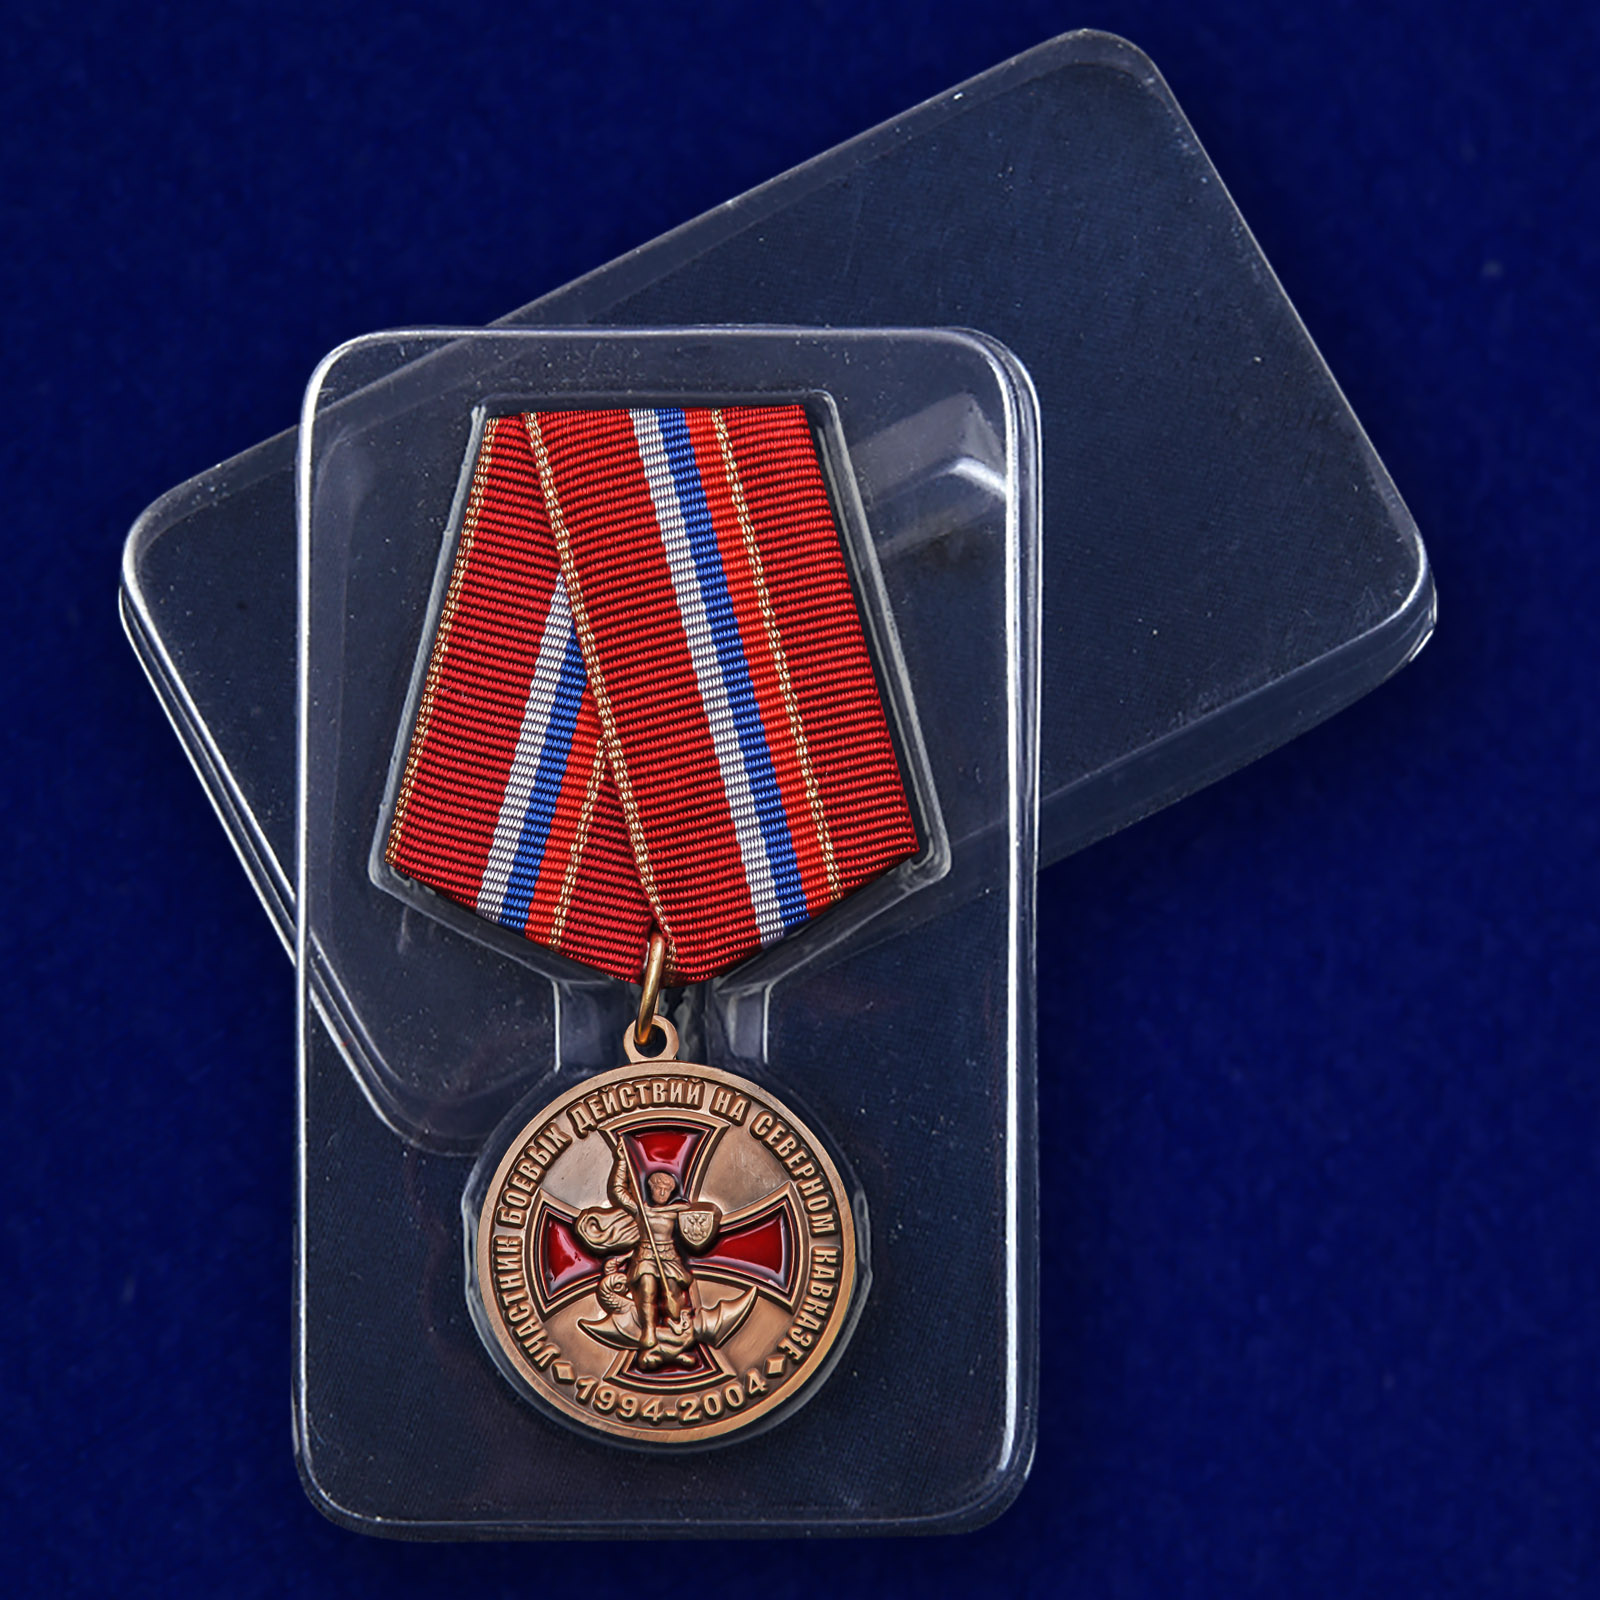 Медаль «Участник боевых действий на Северном Кавказе» 1994-2004 